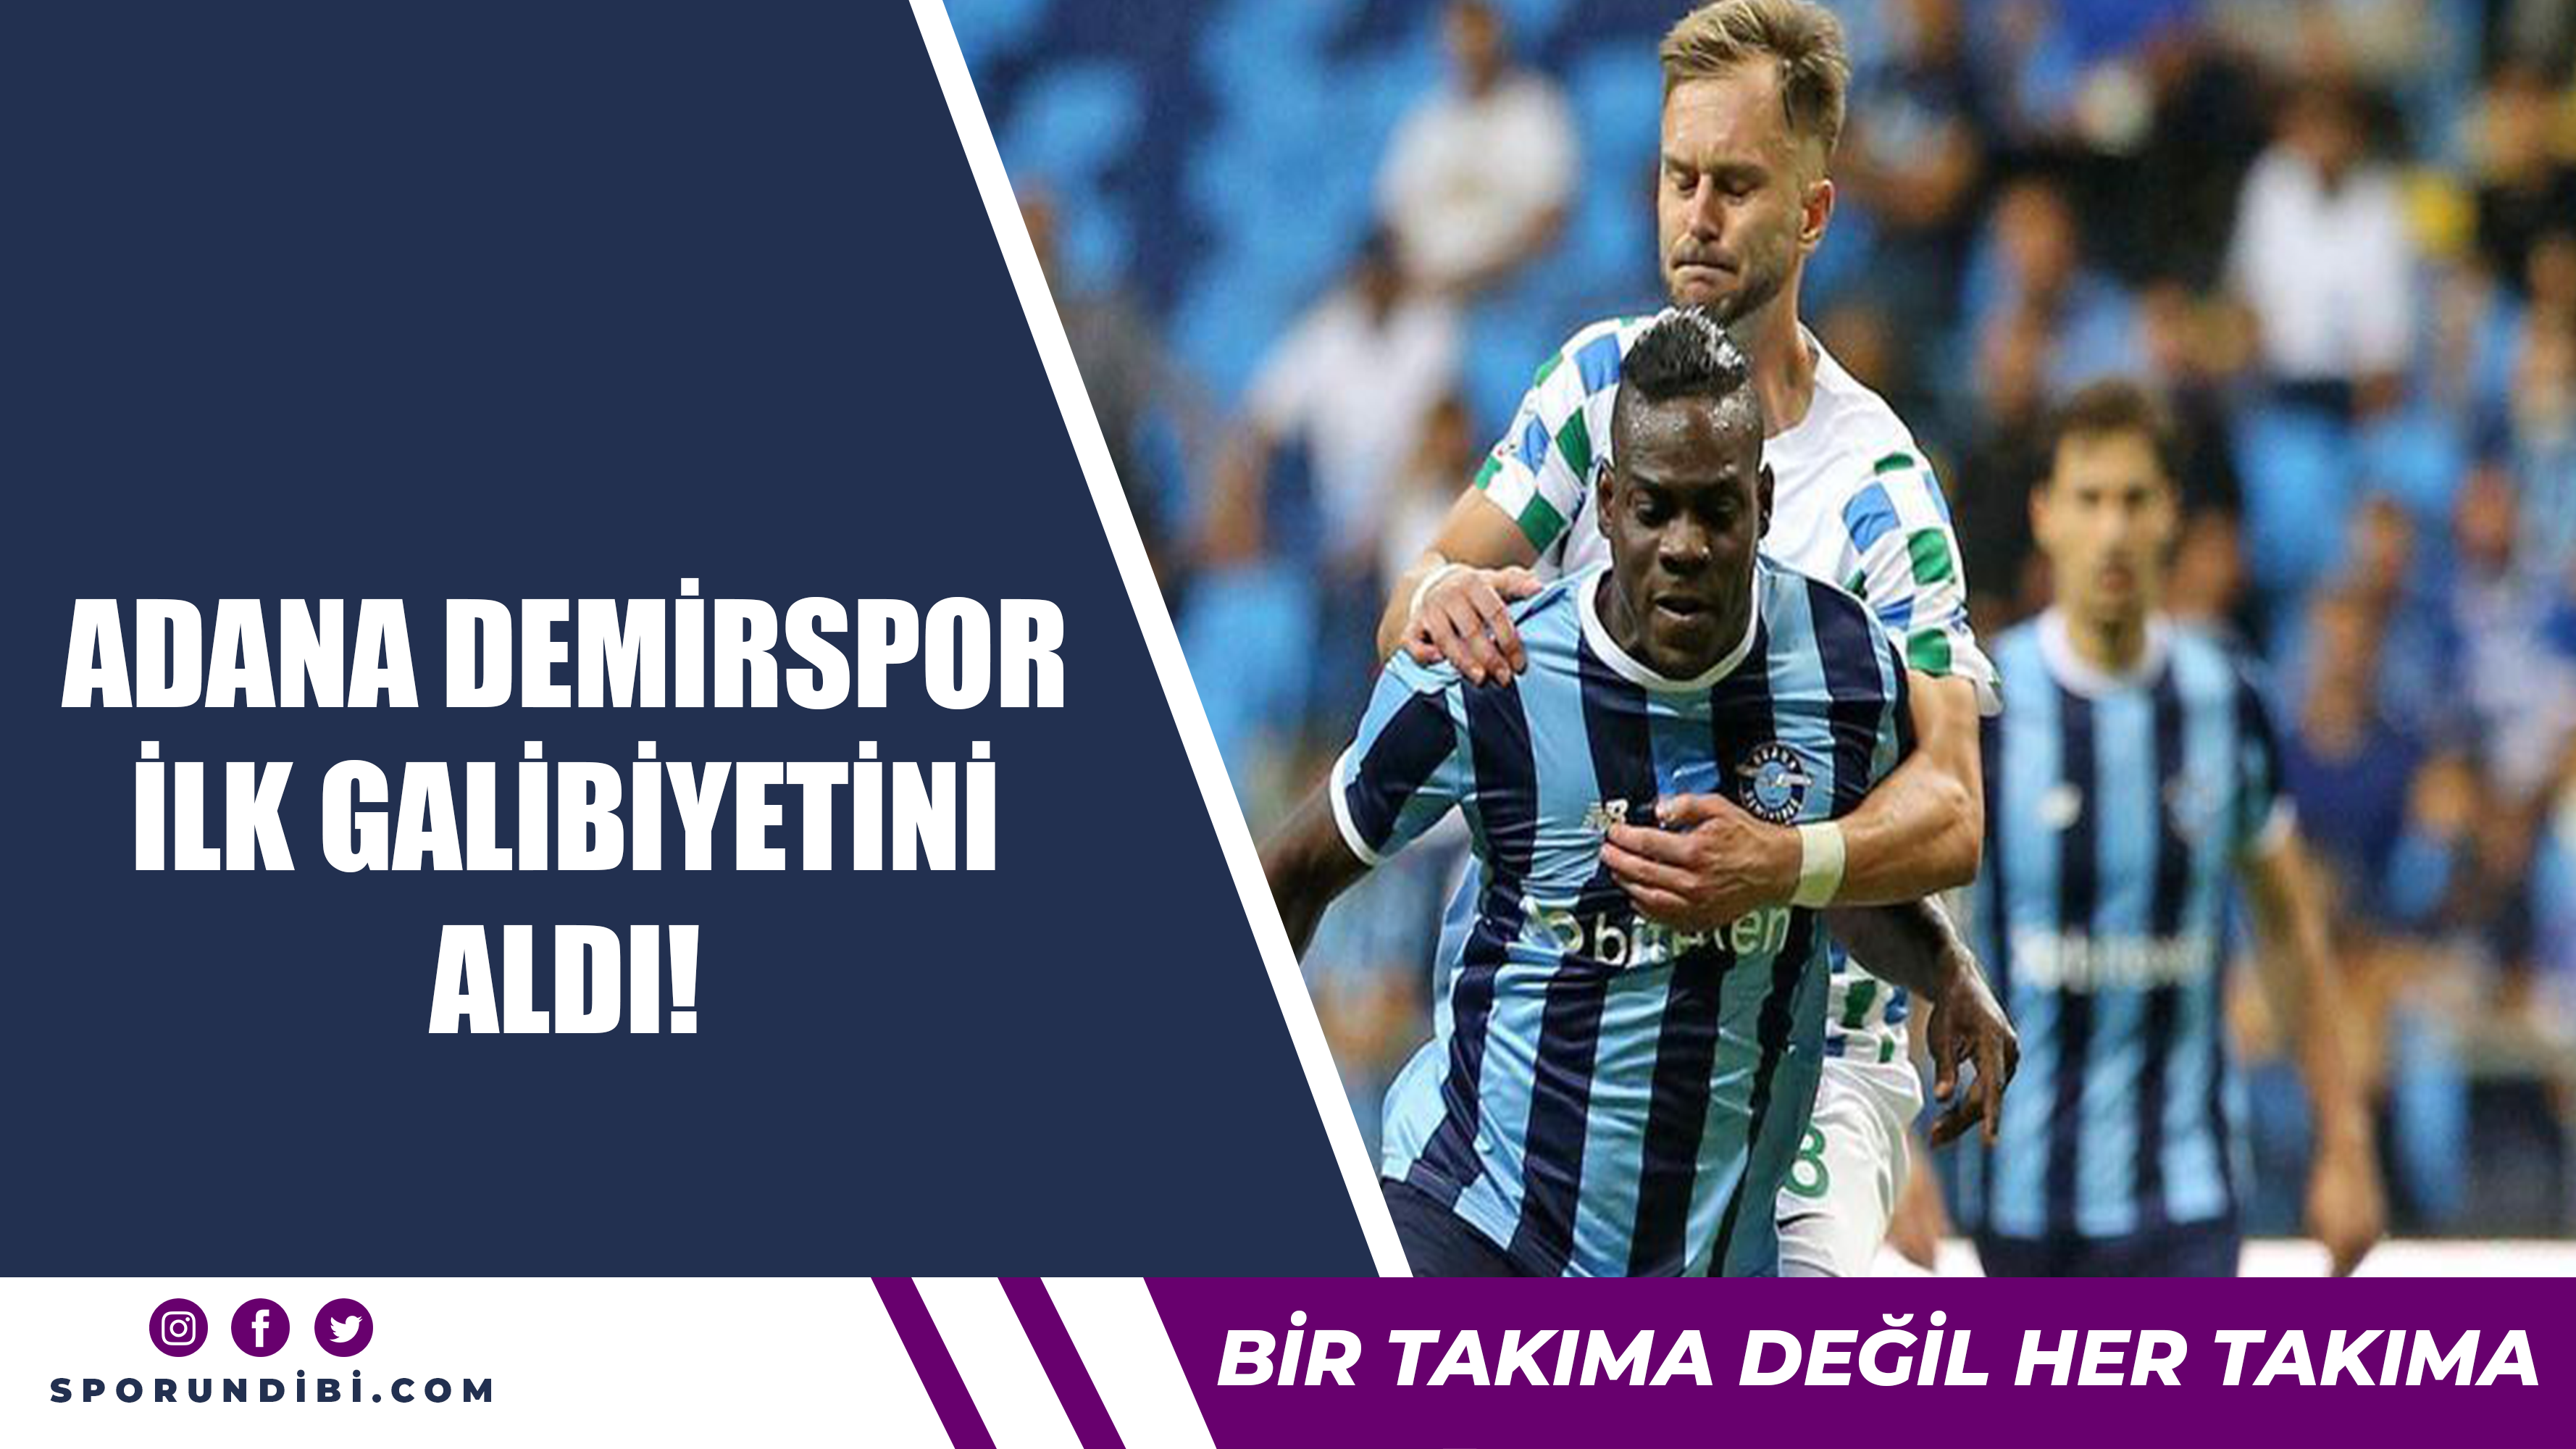 Adana Demirspor ilk galibiyetini aldı!